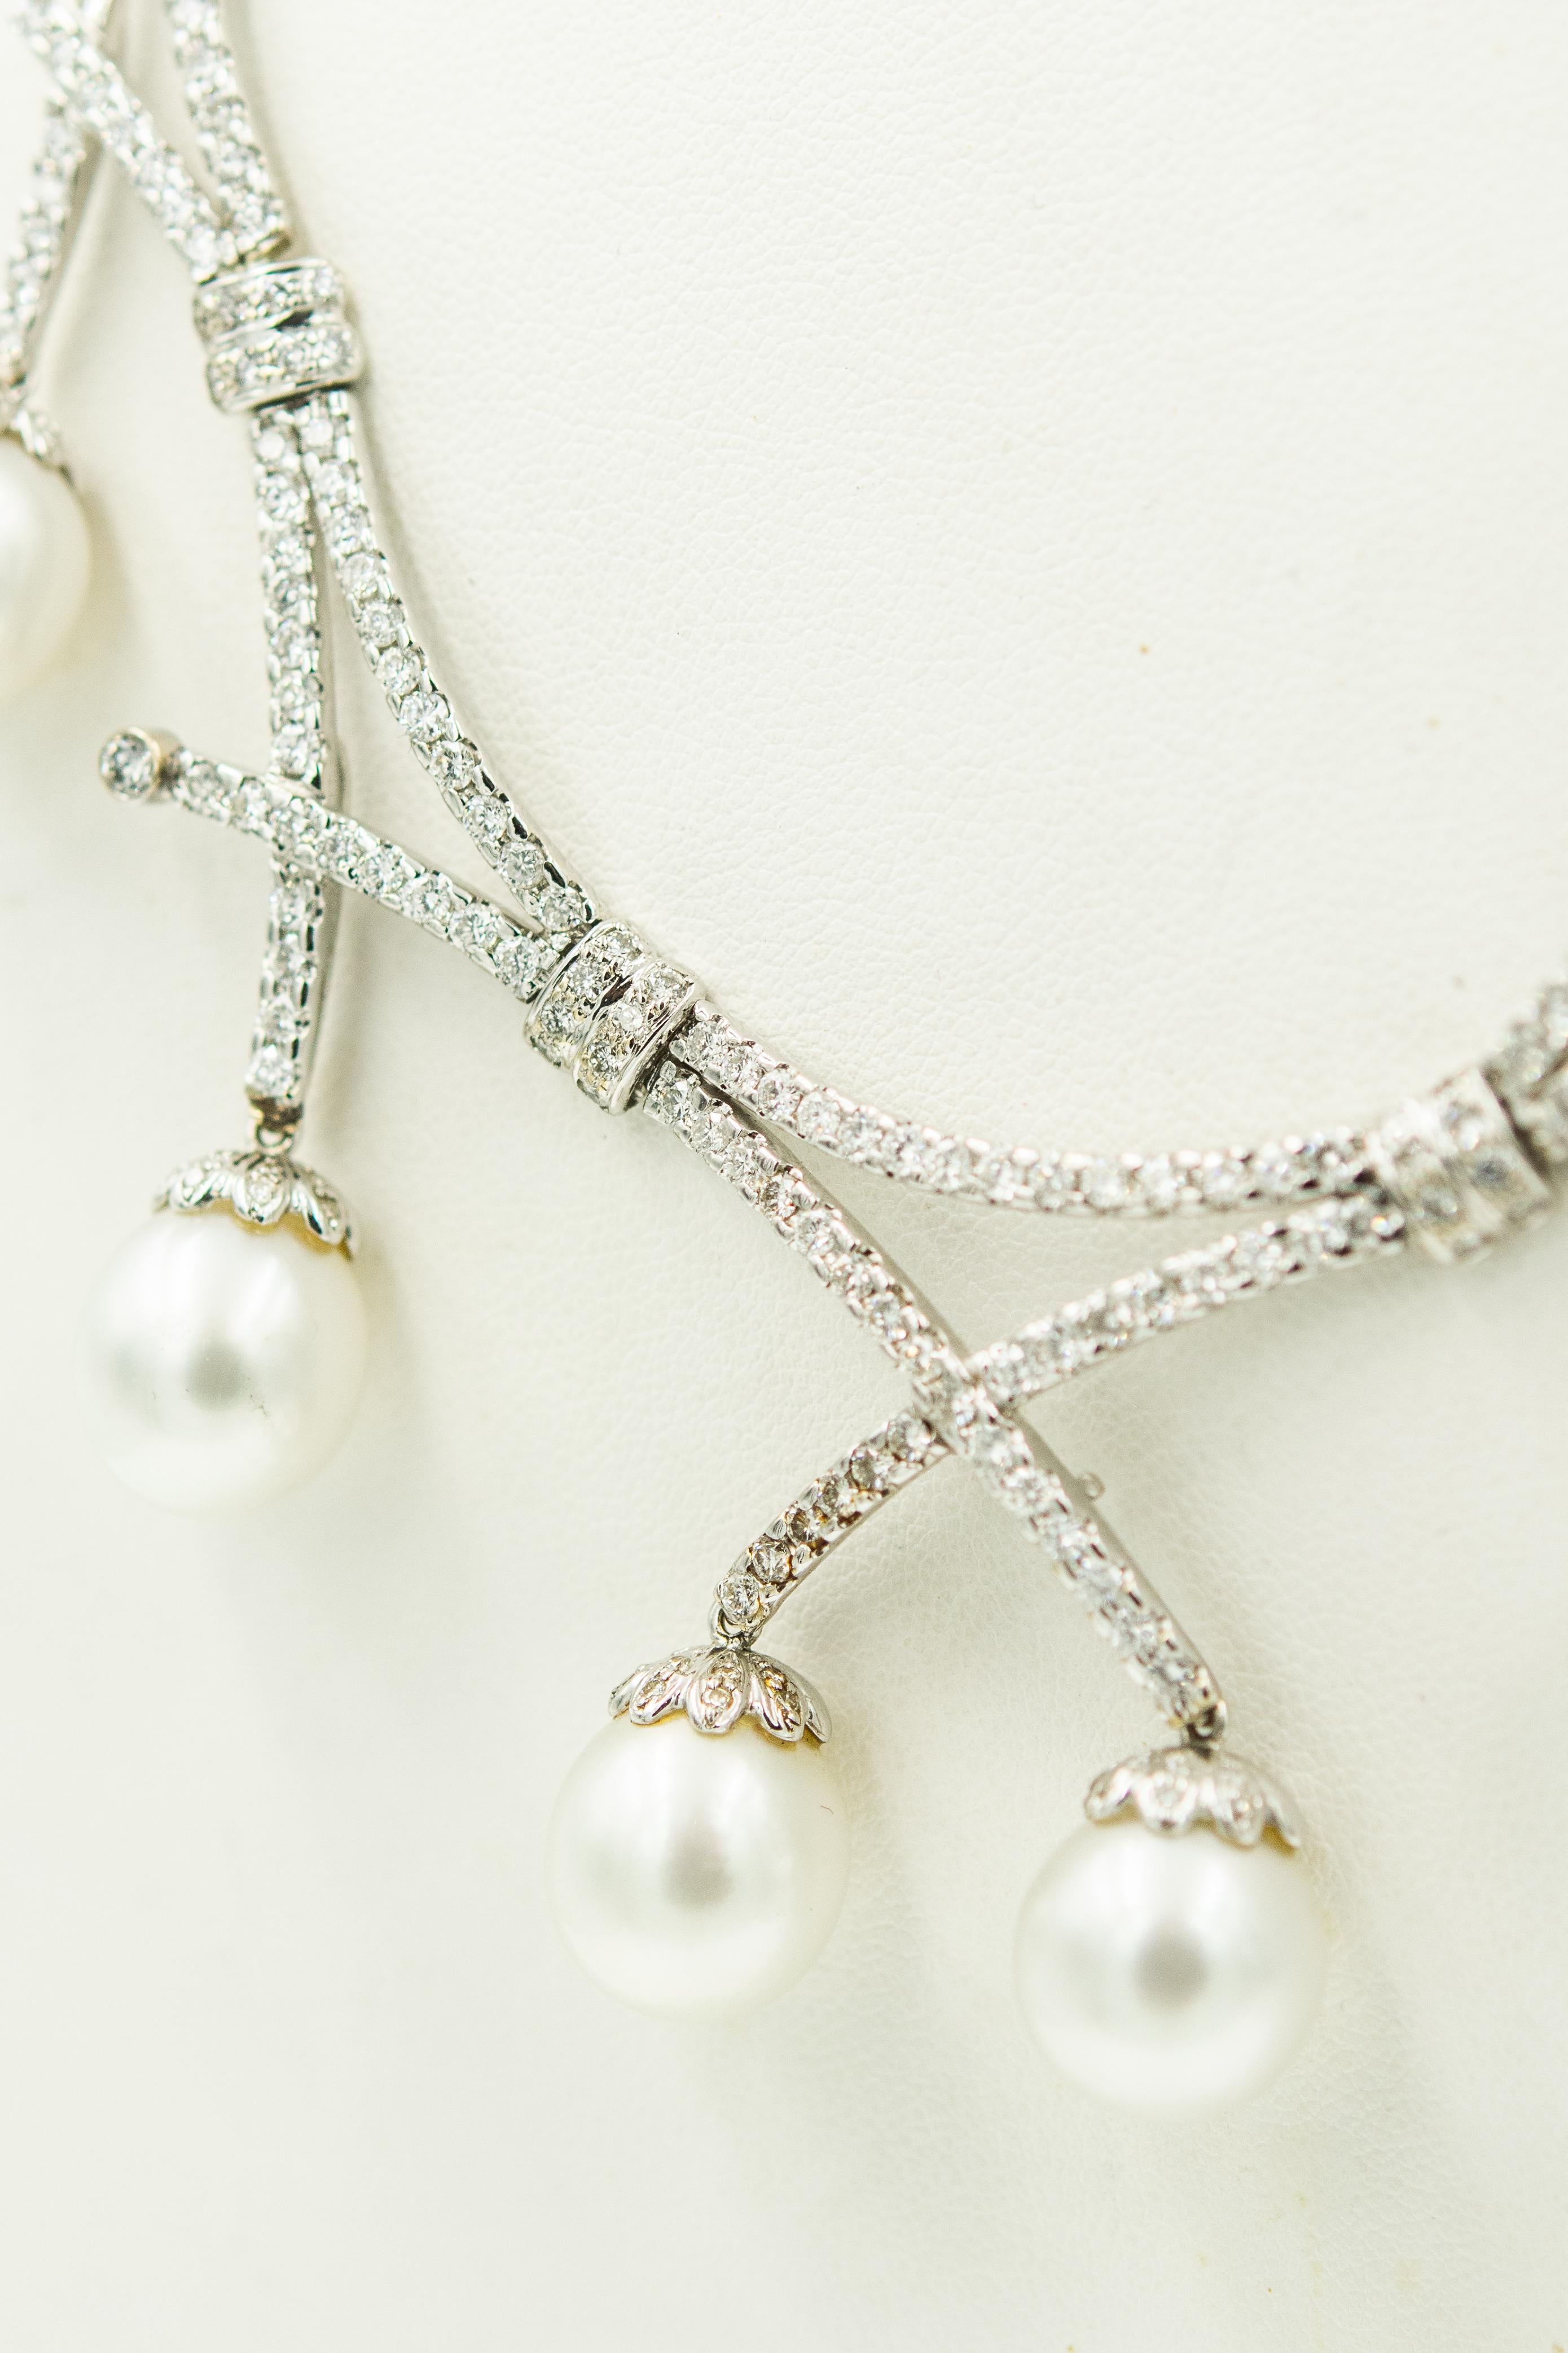 Atemberaubende Halskette im Latz-Stil mit 7 Barockperlen (ca. 11,50 mm), die eine feine silbrig-weiße Farbe und guten Glanz haben und an einer runden und bogenförmigen Halskette hängen.  Die siebenteilige Vorderseite hat sowohl runde als auch